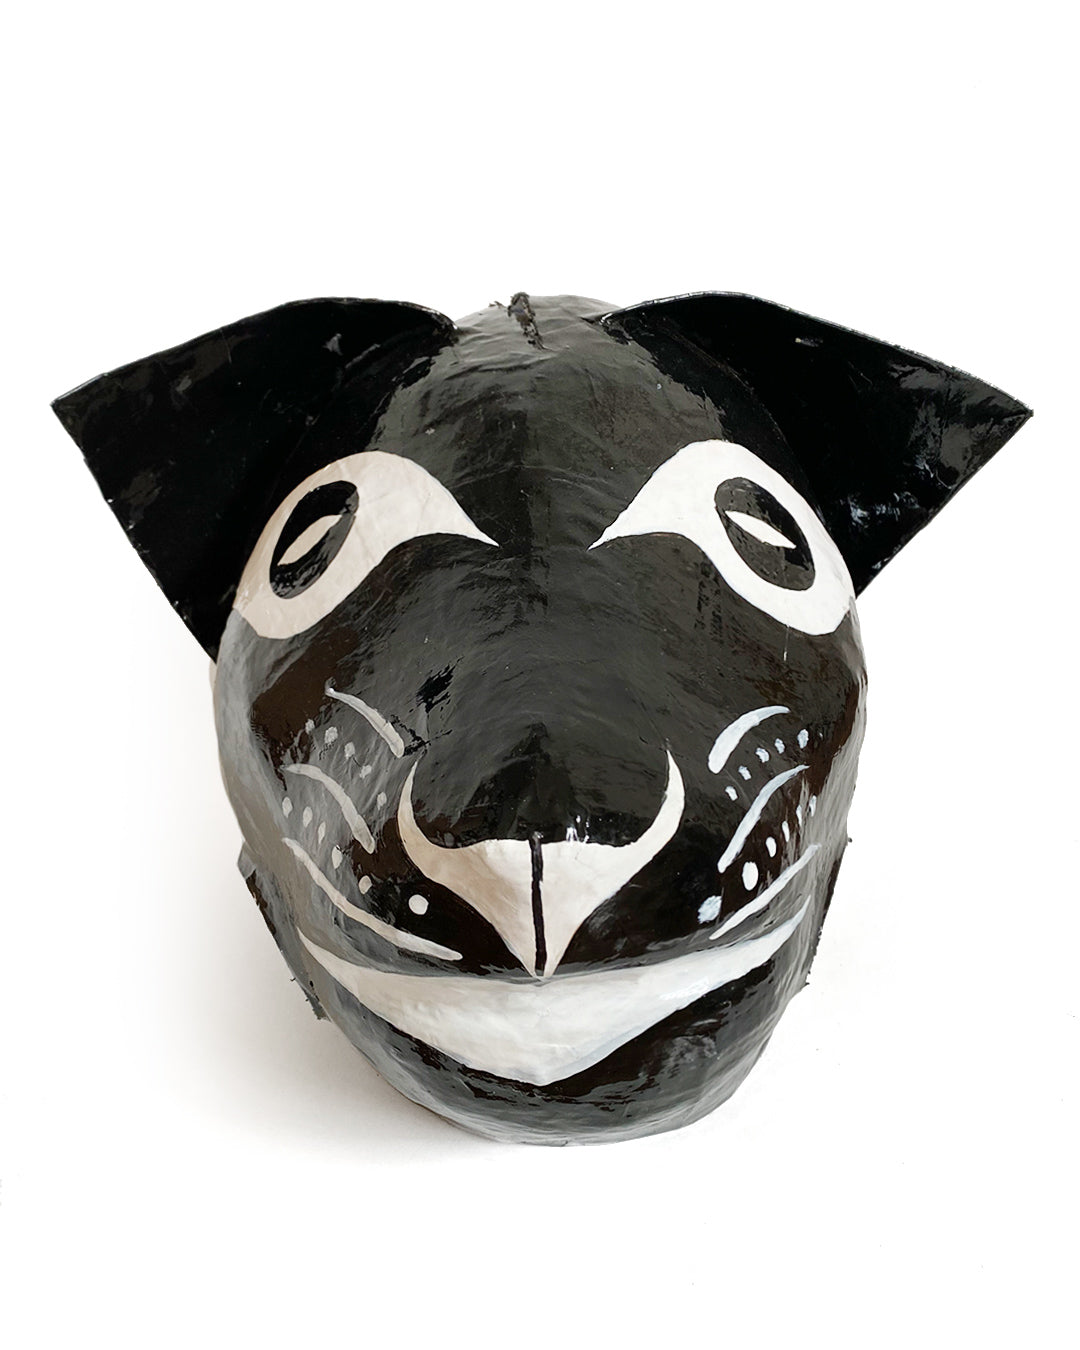 Máscara de onça preta c/ espelhos (preto e branco)